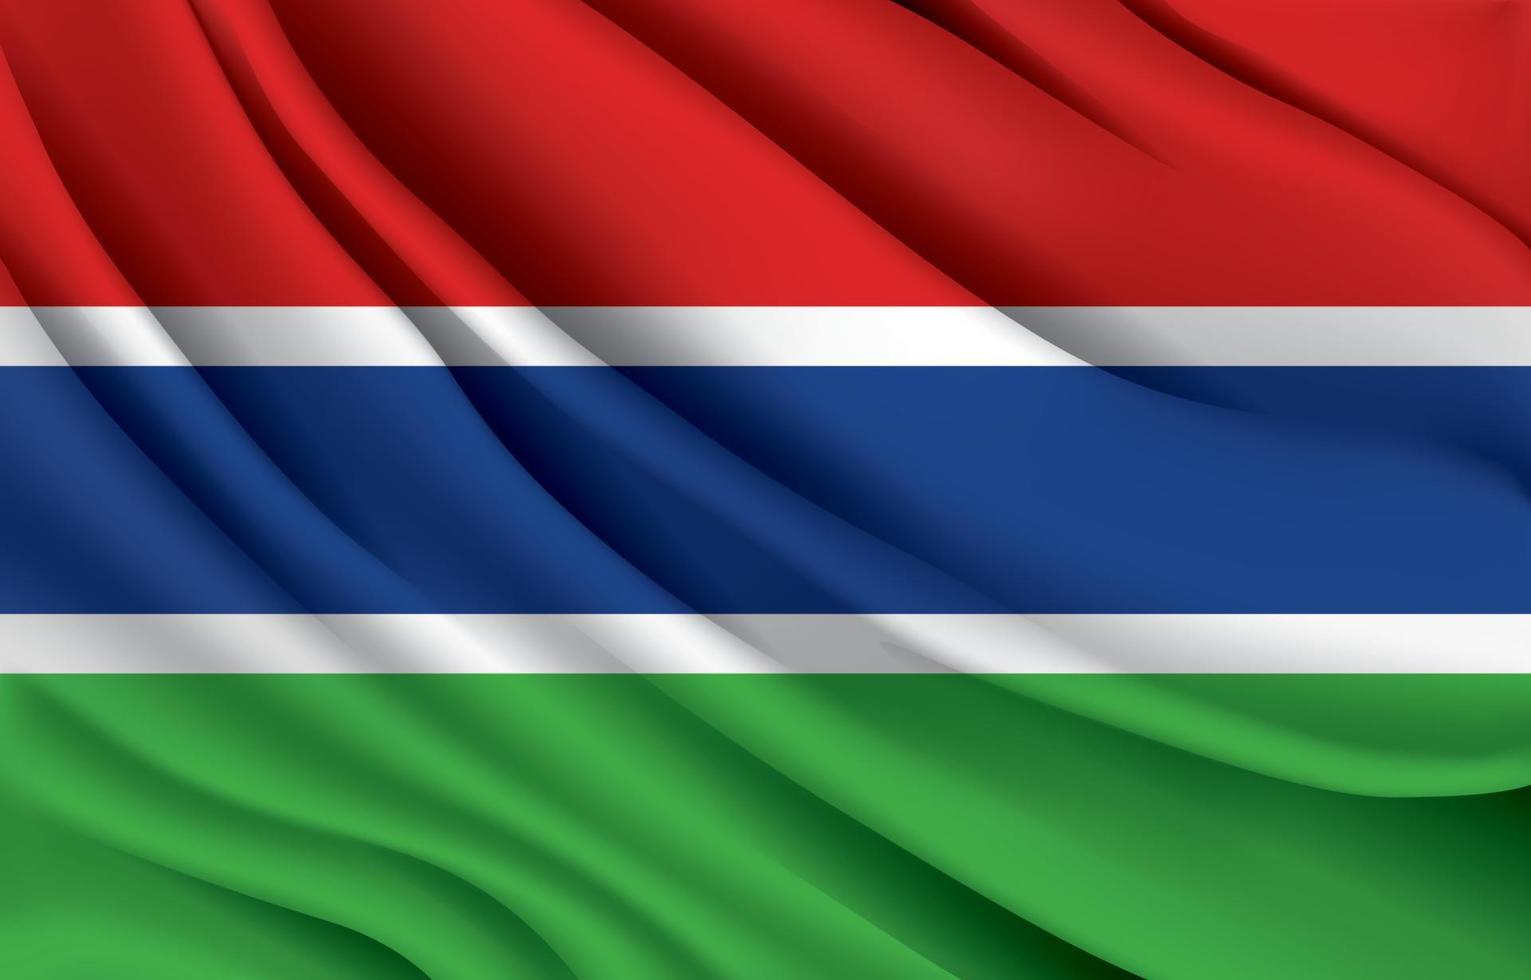 drapeau national de la gambie agitant une illustration vectorielle réaliste vecteur